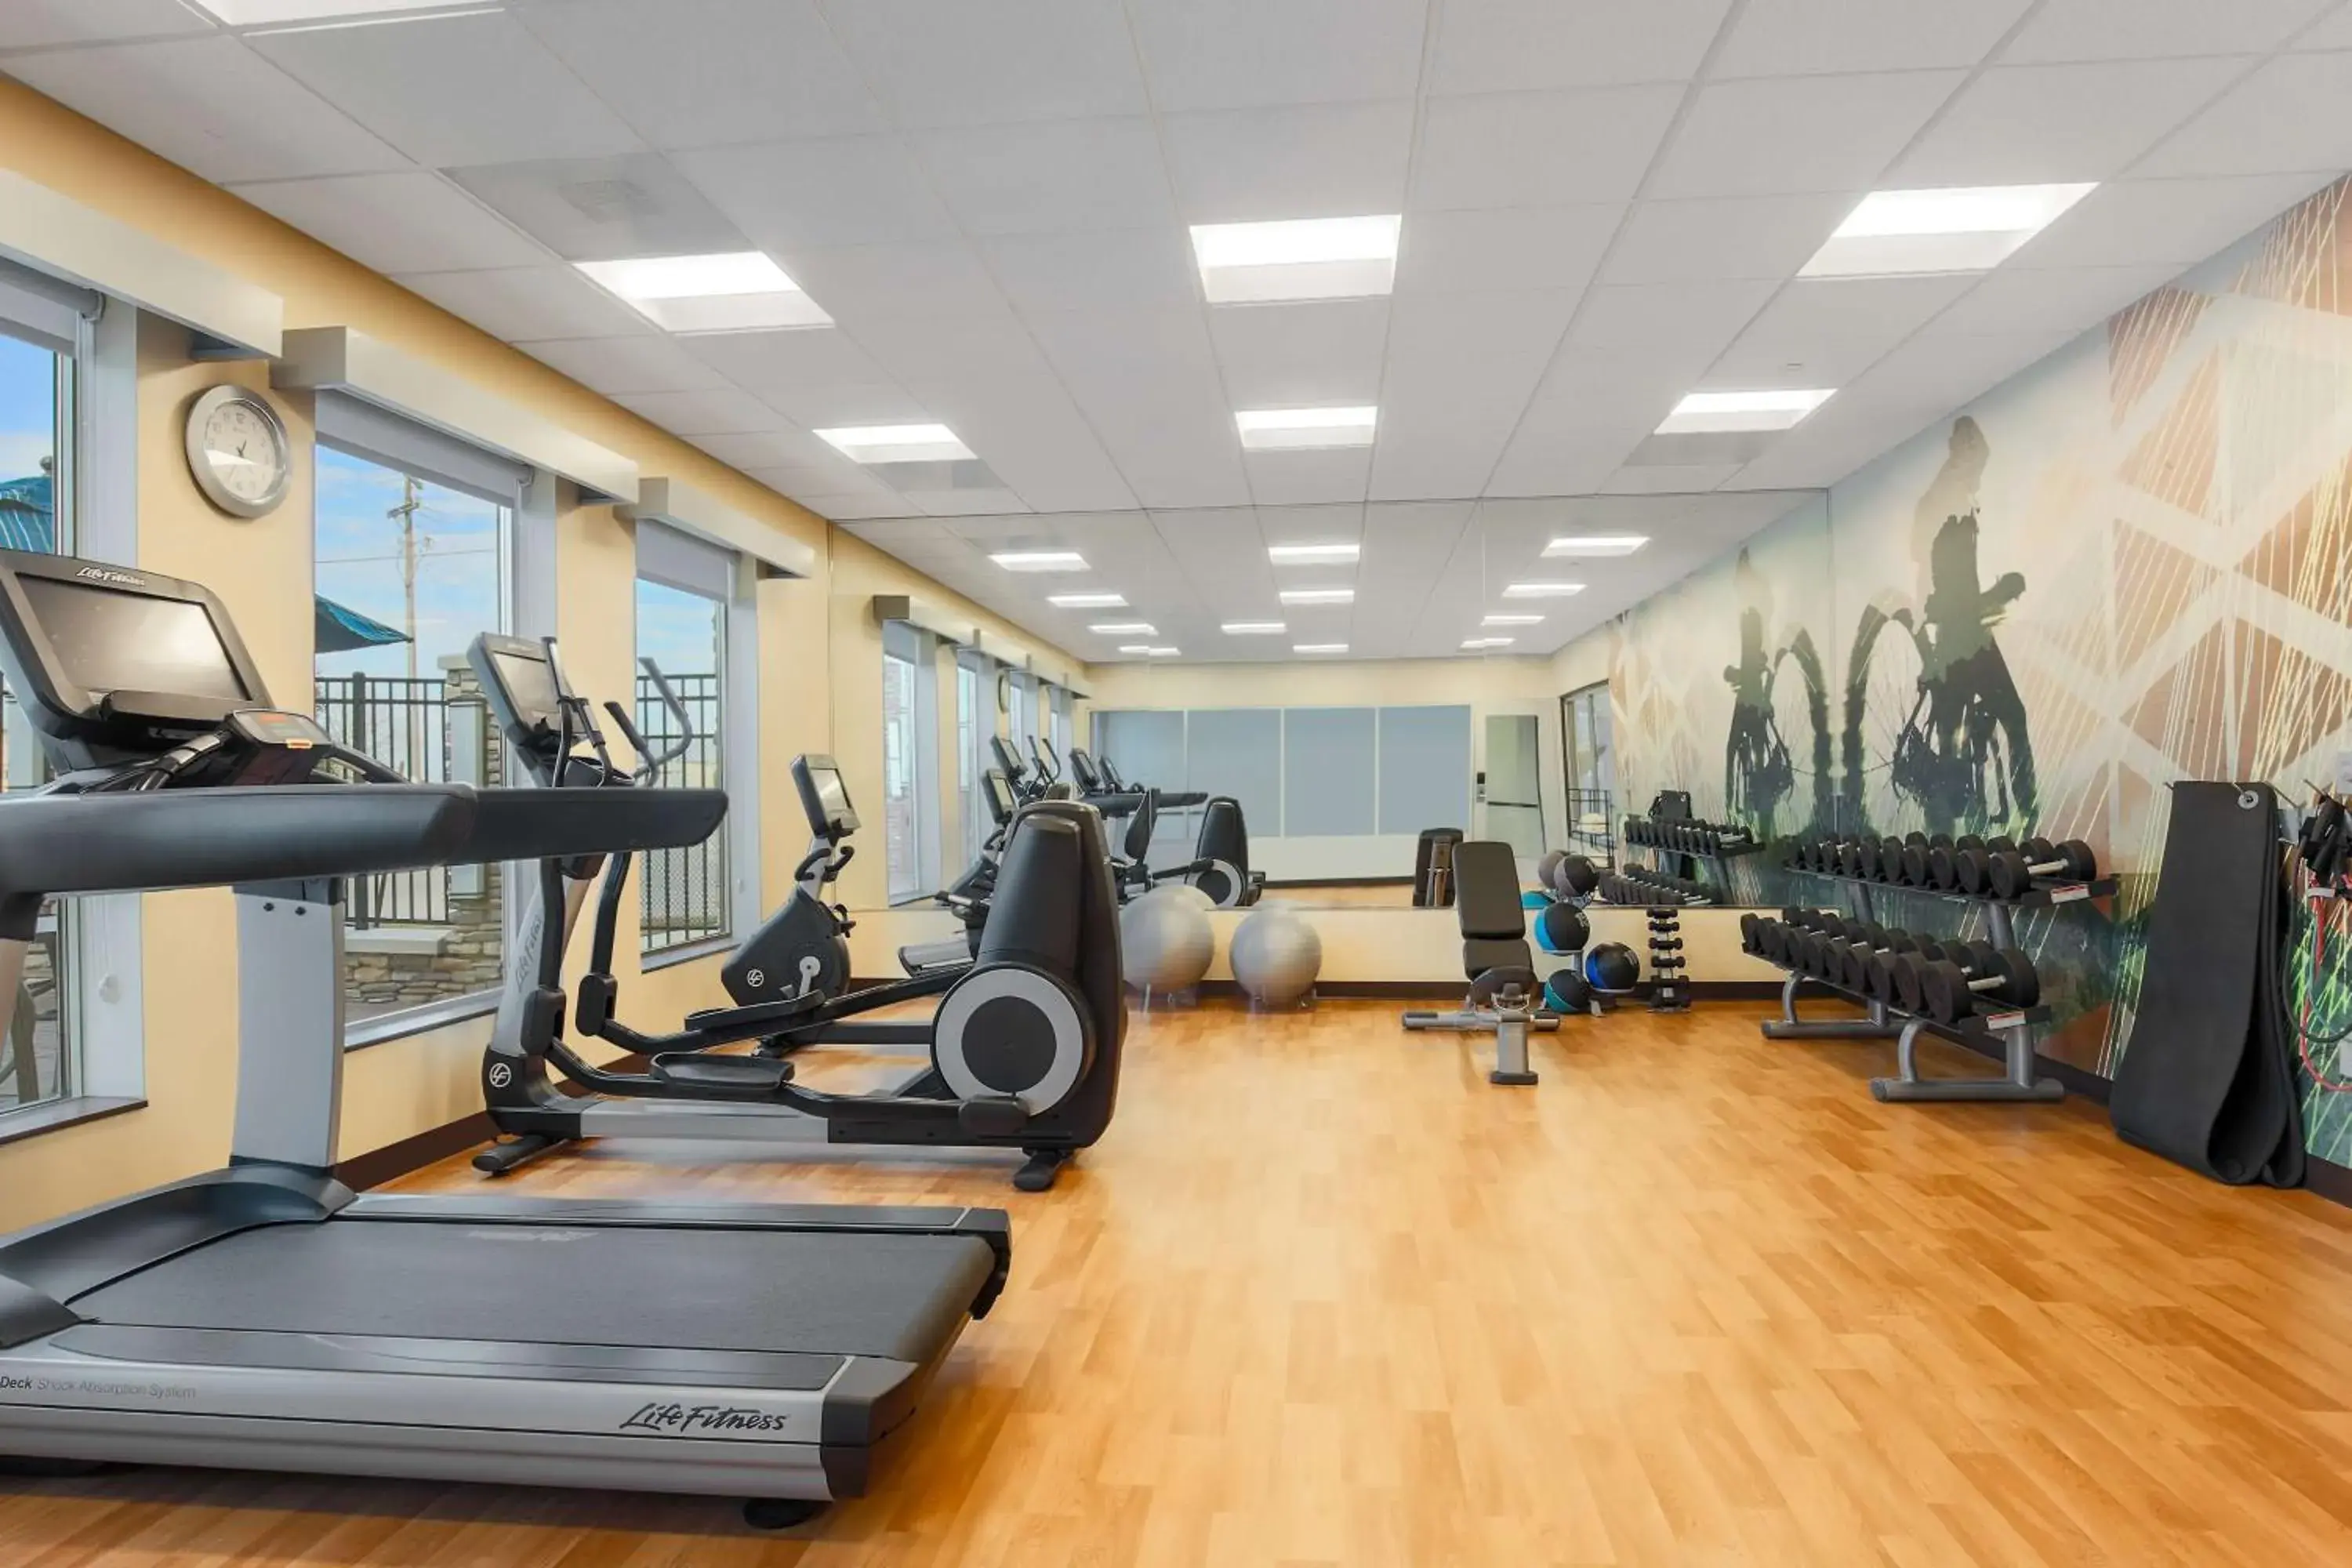 Fitness centre/facilities, Fitness Center/Facilities in Hyatt Place Austin Cedar Park